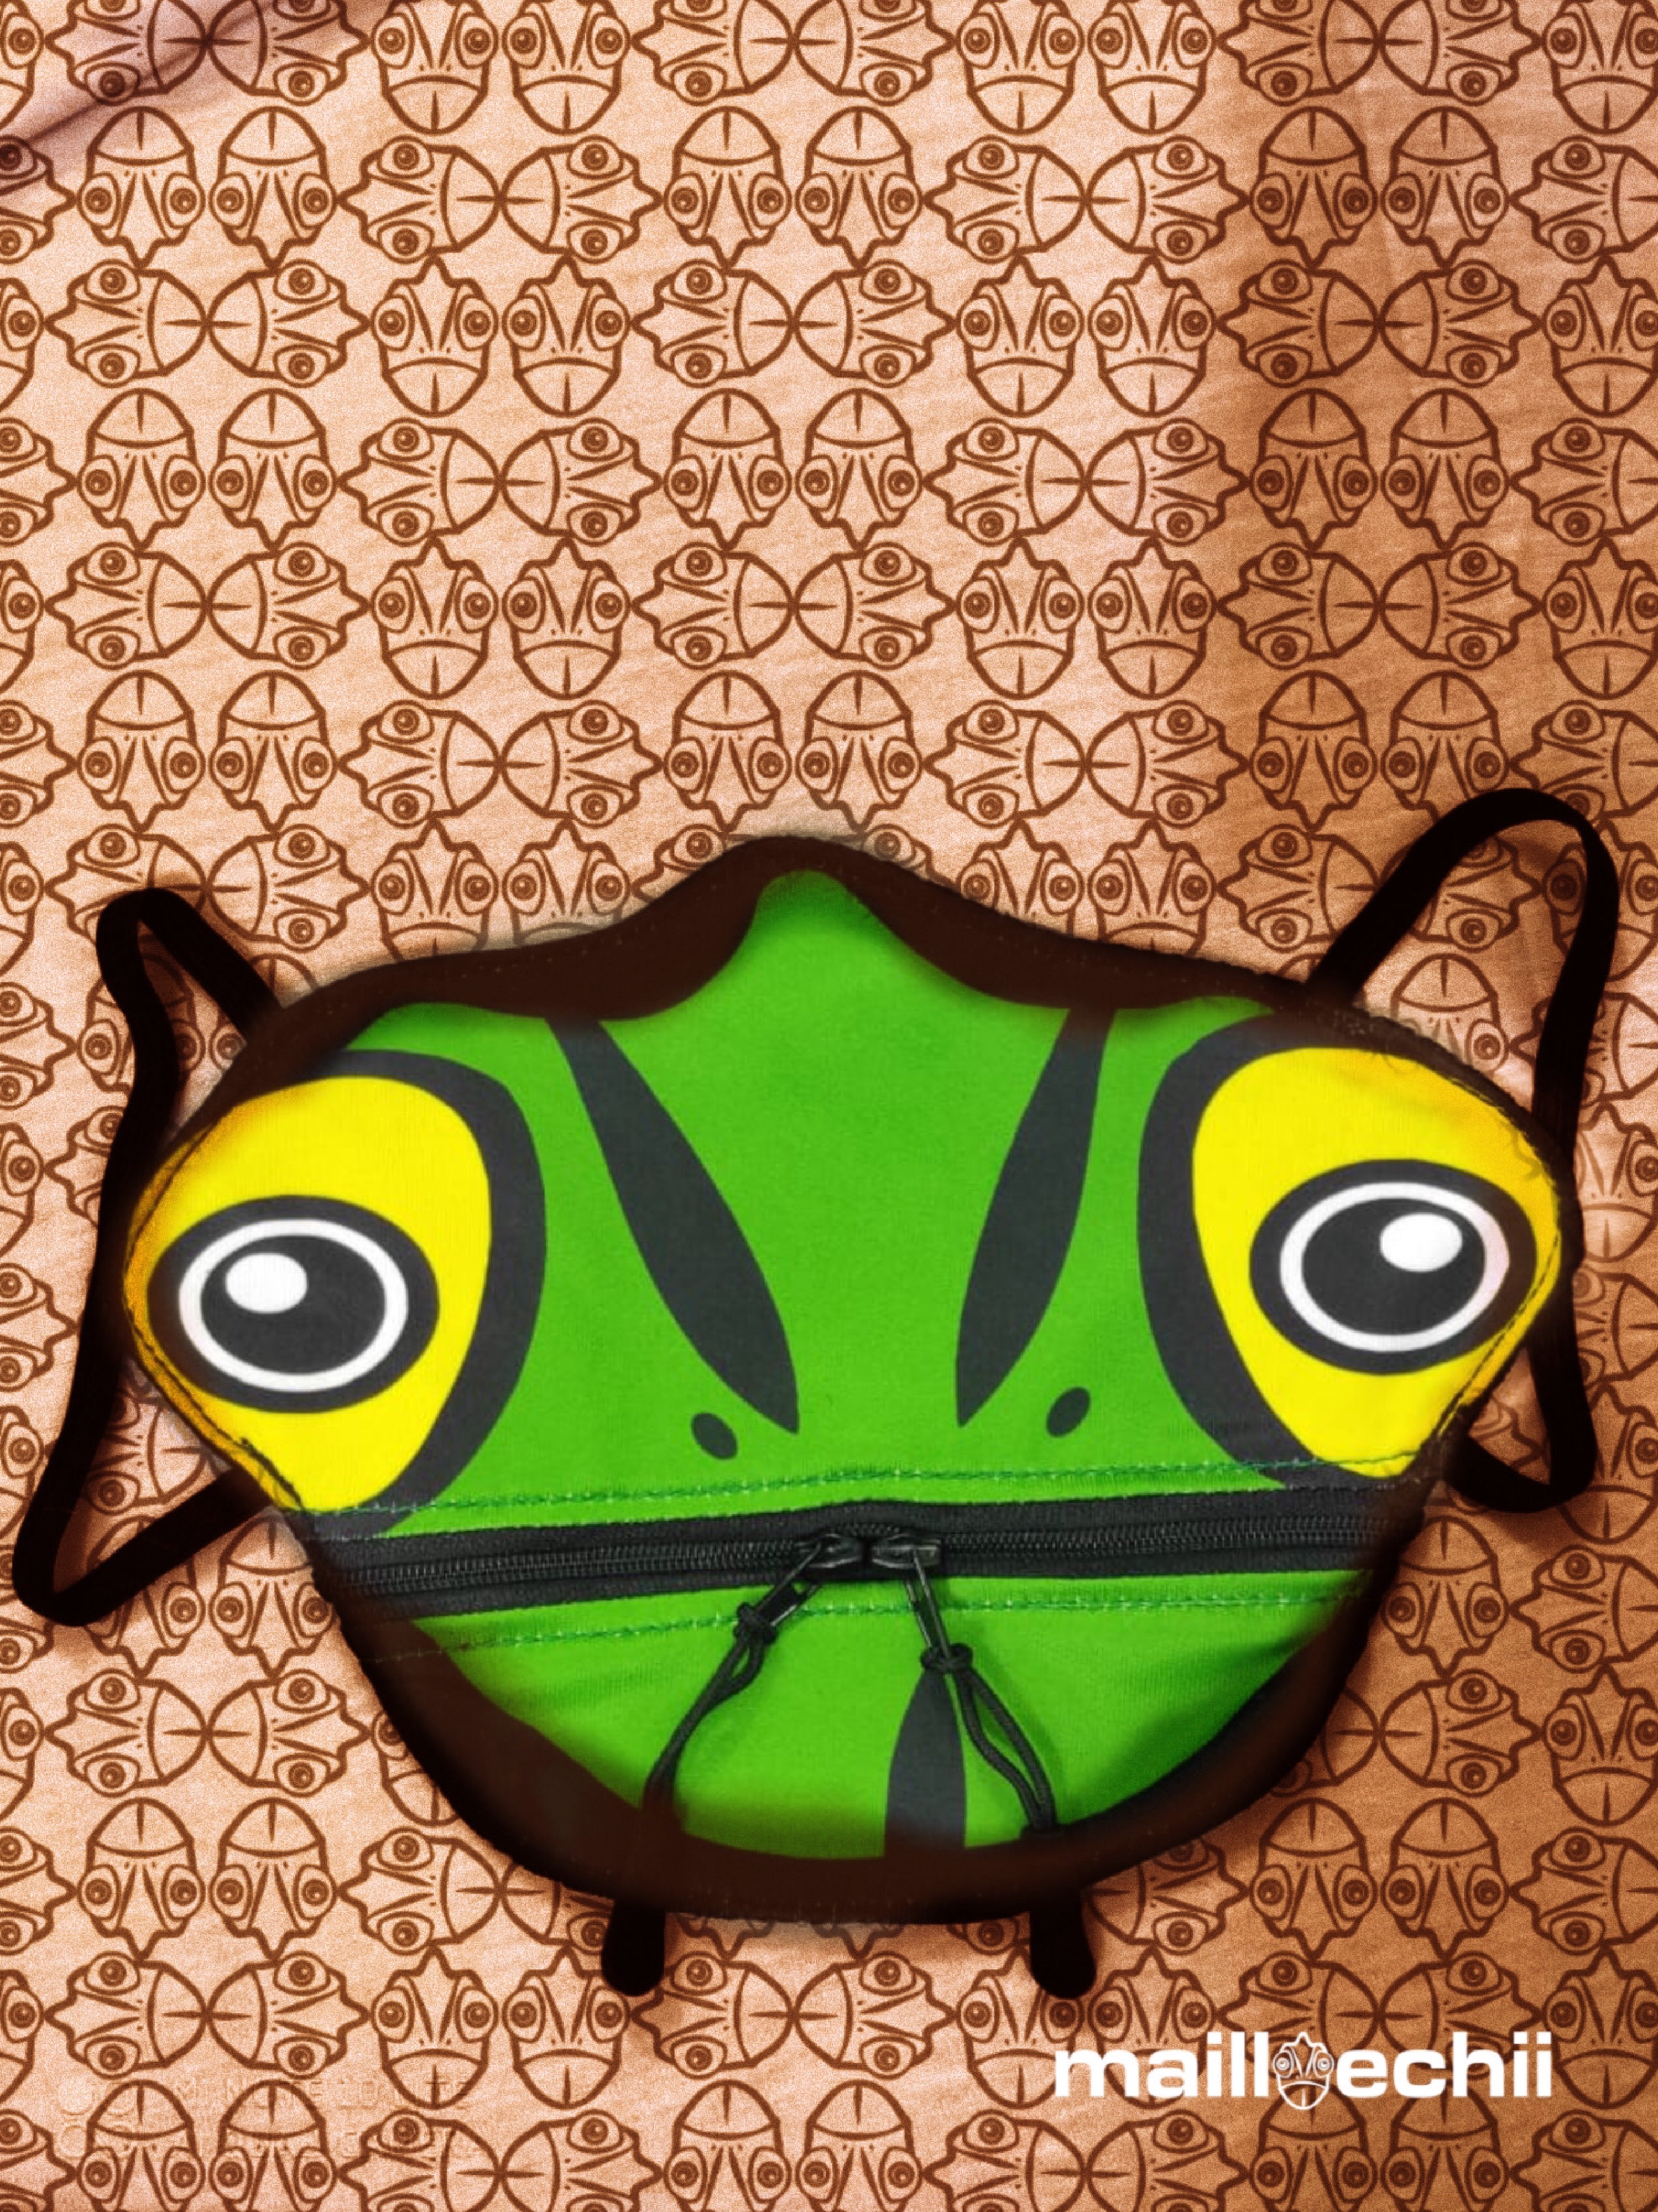 Iconic Chameleon Mask